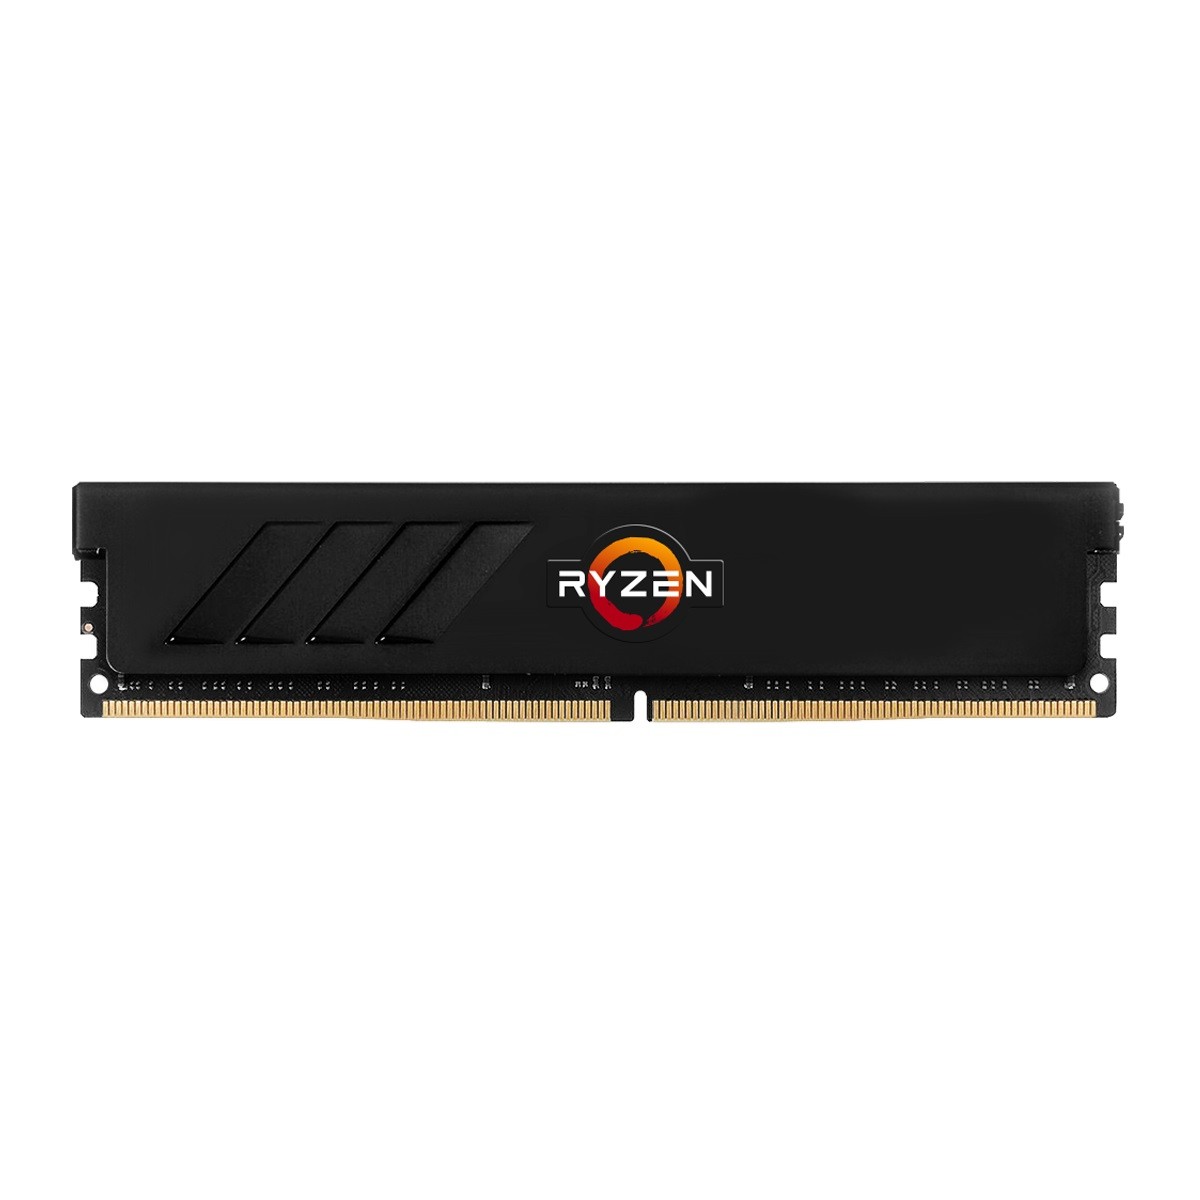 Memória DDR4 Geil EVO Spear Phantom Gaming (AMD), 16GB (2x8GB), 3000MHz, Black, GASF416GB3000C16ADC